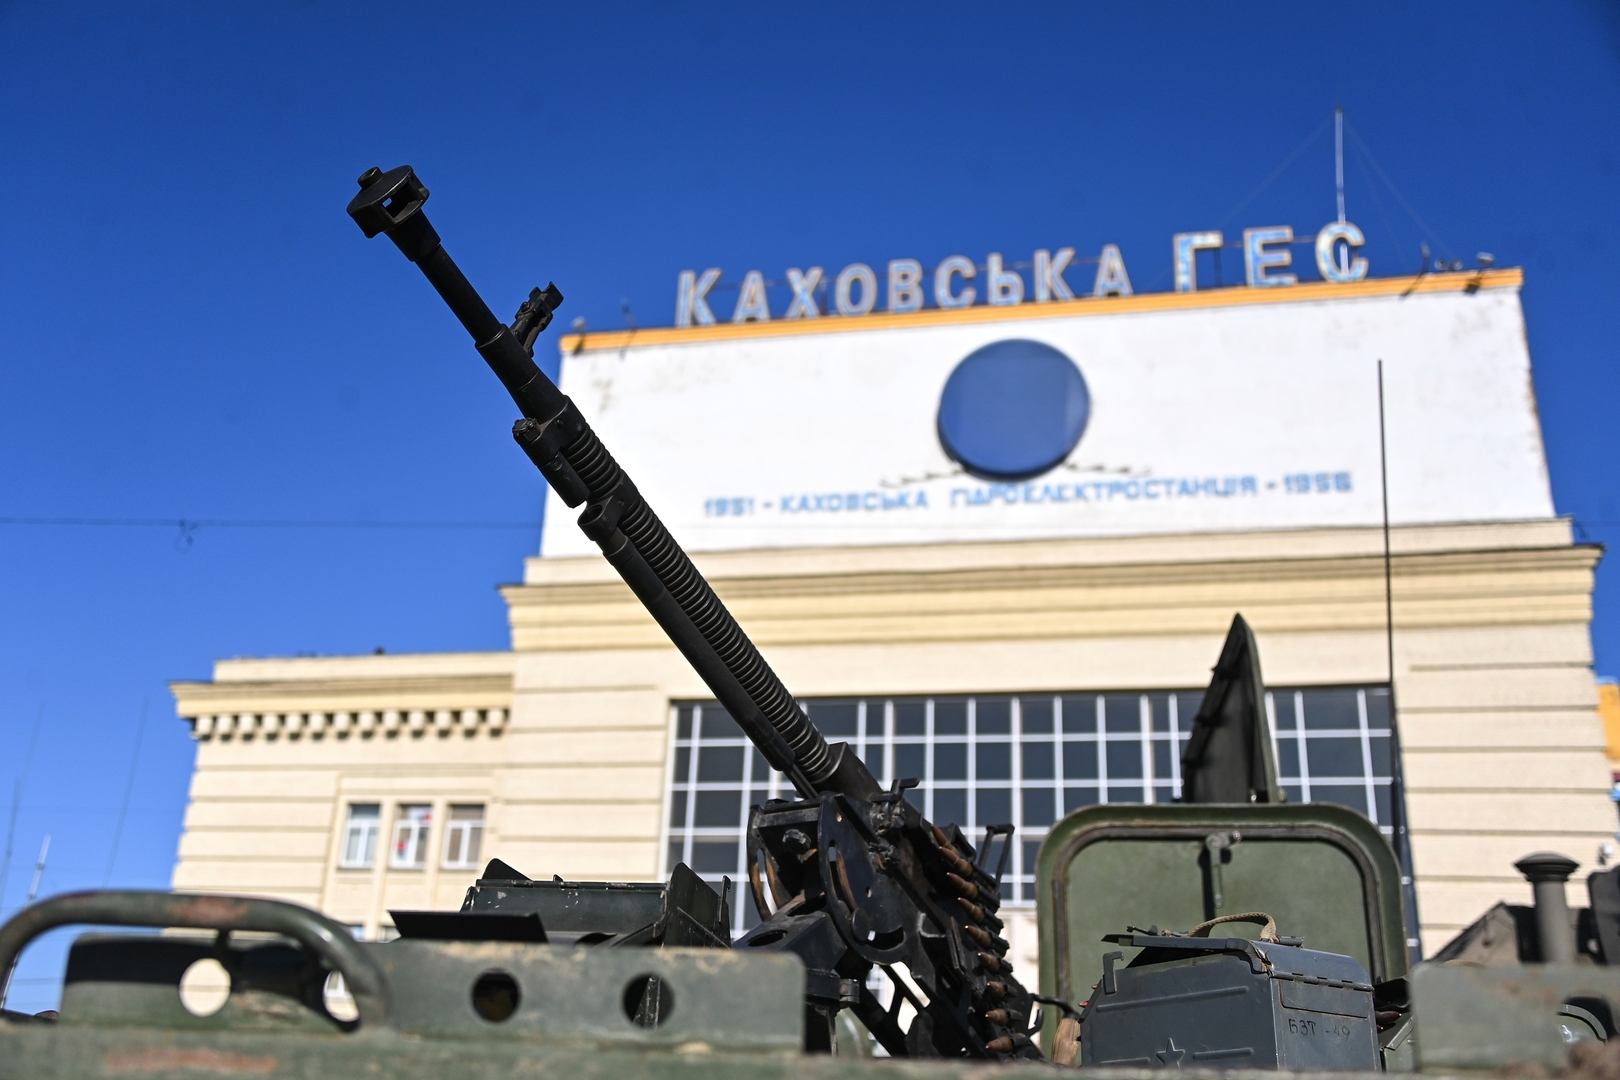 قوات كييف تقصف مدينة نوفايا كاخوفكا في مقاطعة خيرسون